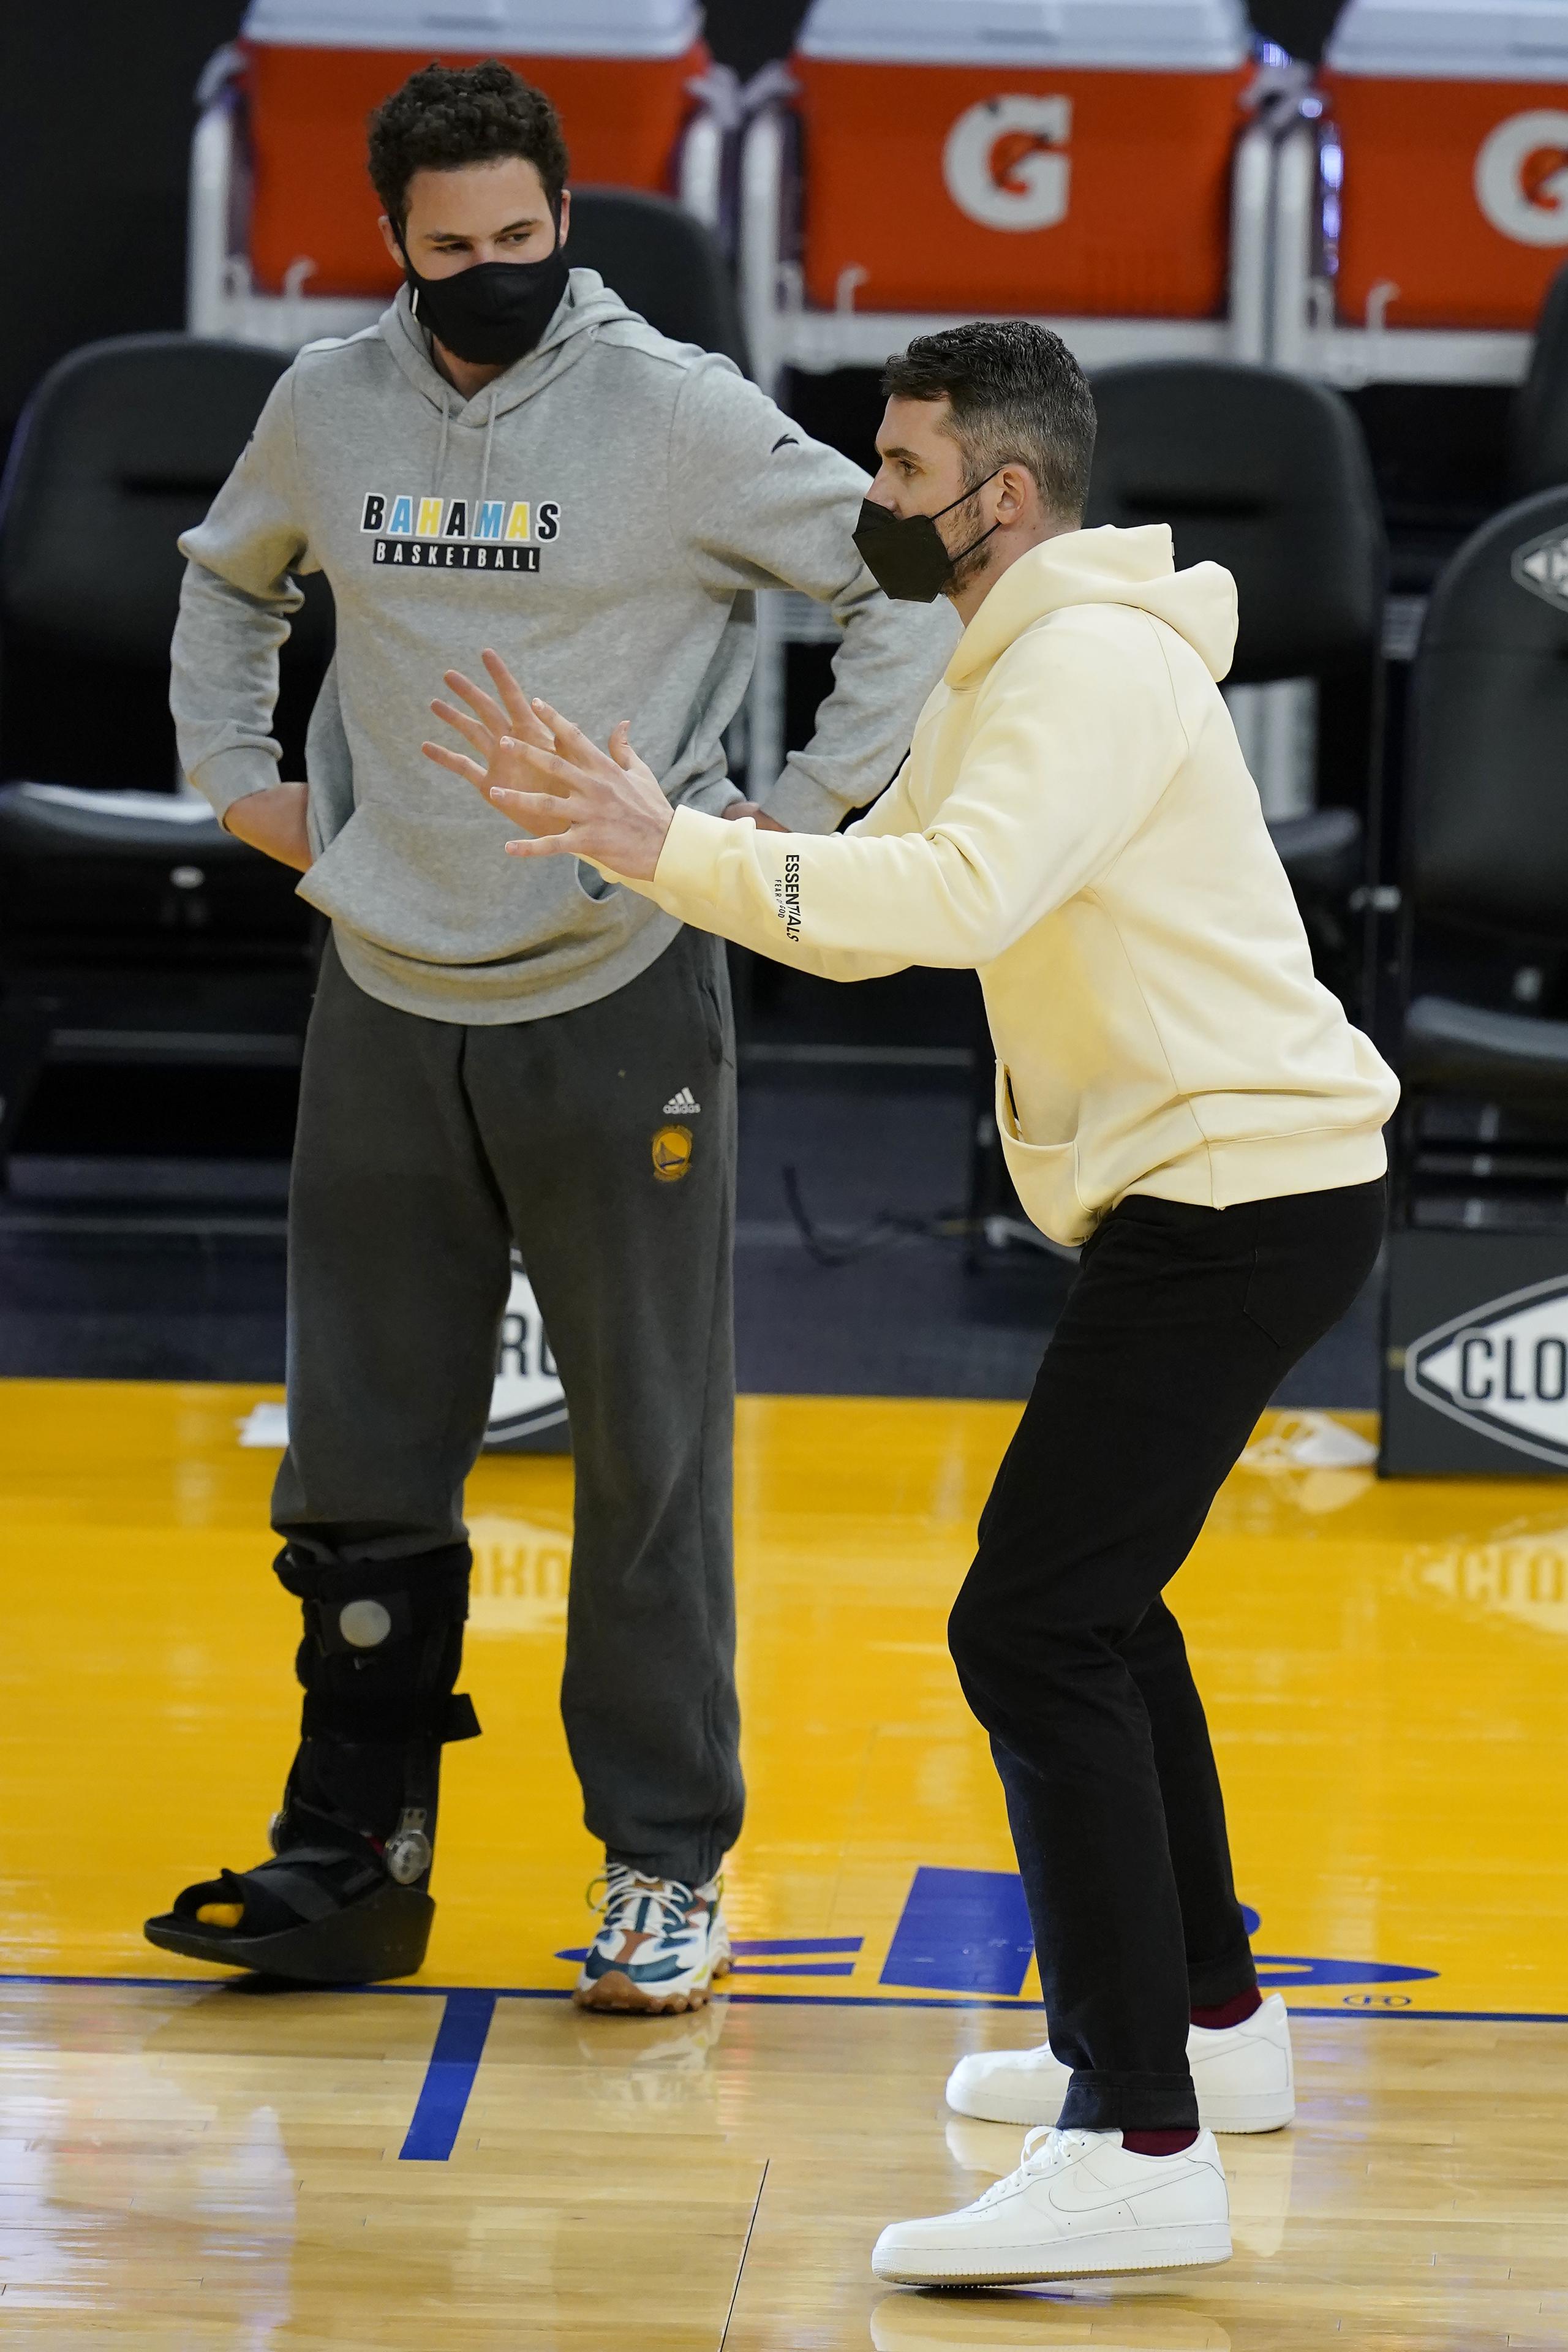 El delantero de los Warriors de Golden State, Klay Thompson, a la izquierda junto a Kevin Love, ya puede caminar sin usar la bota protectora. Este trabaja en una lesión del tendón de Aquiles.